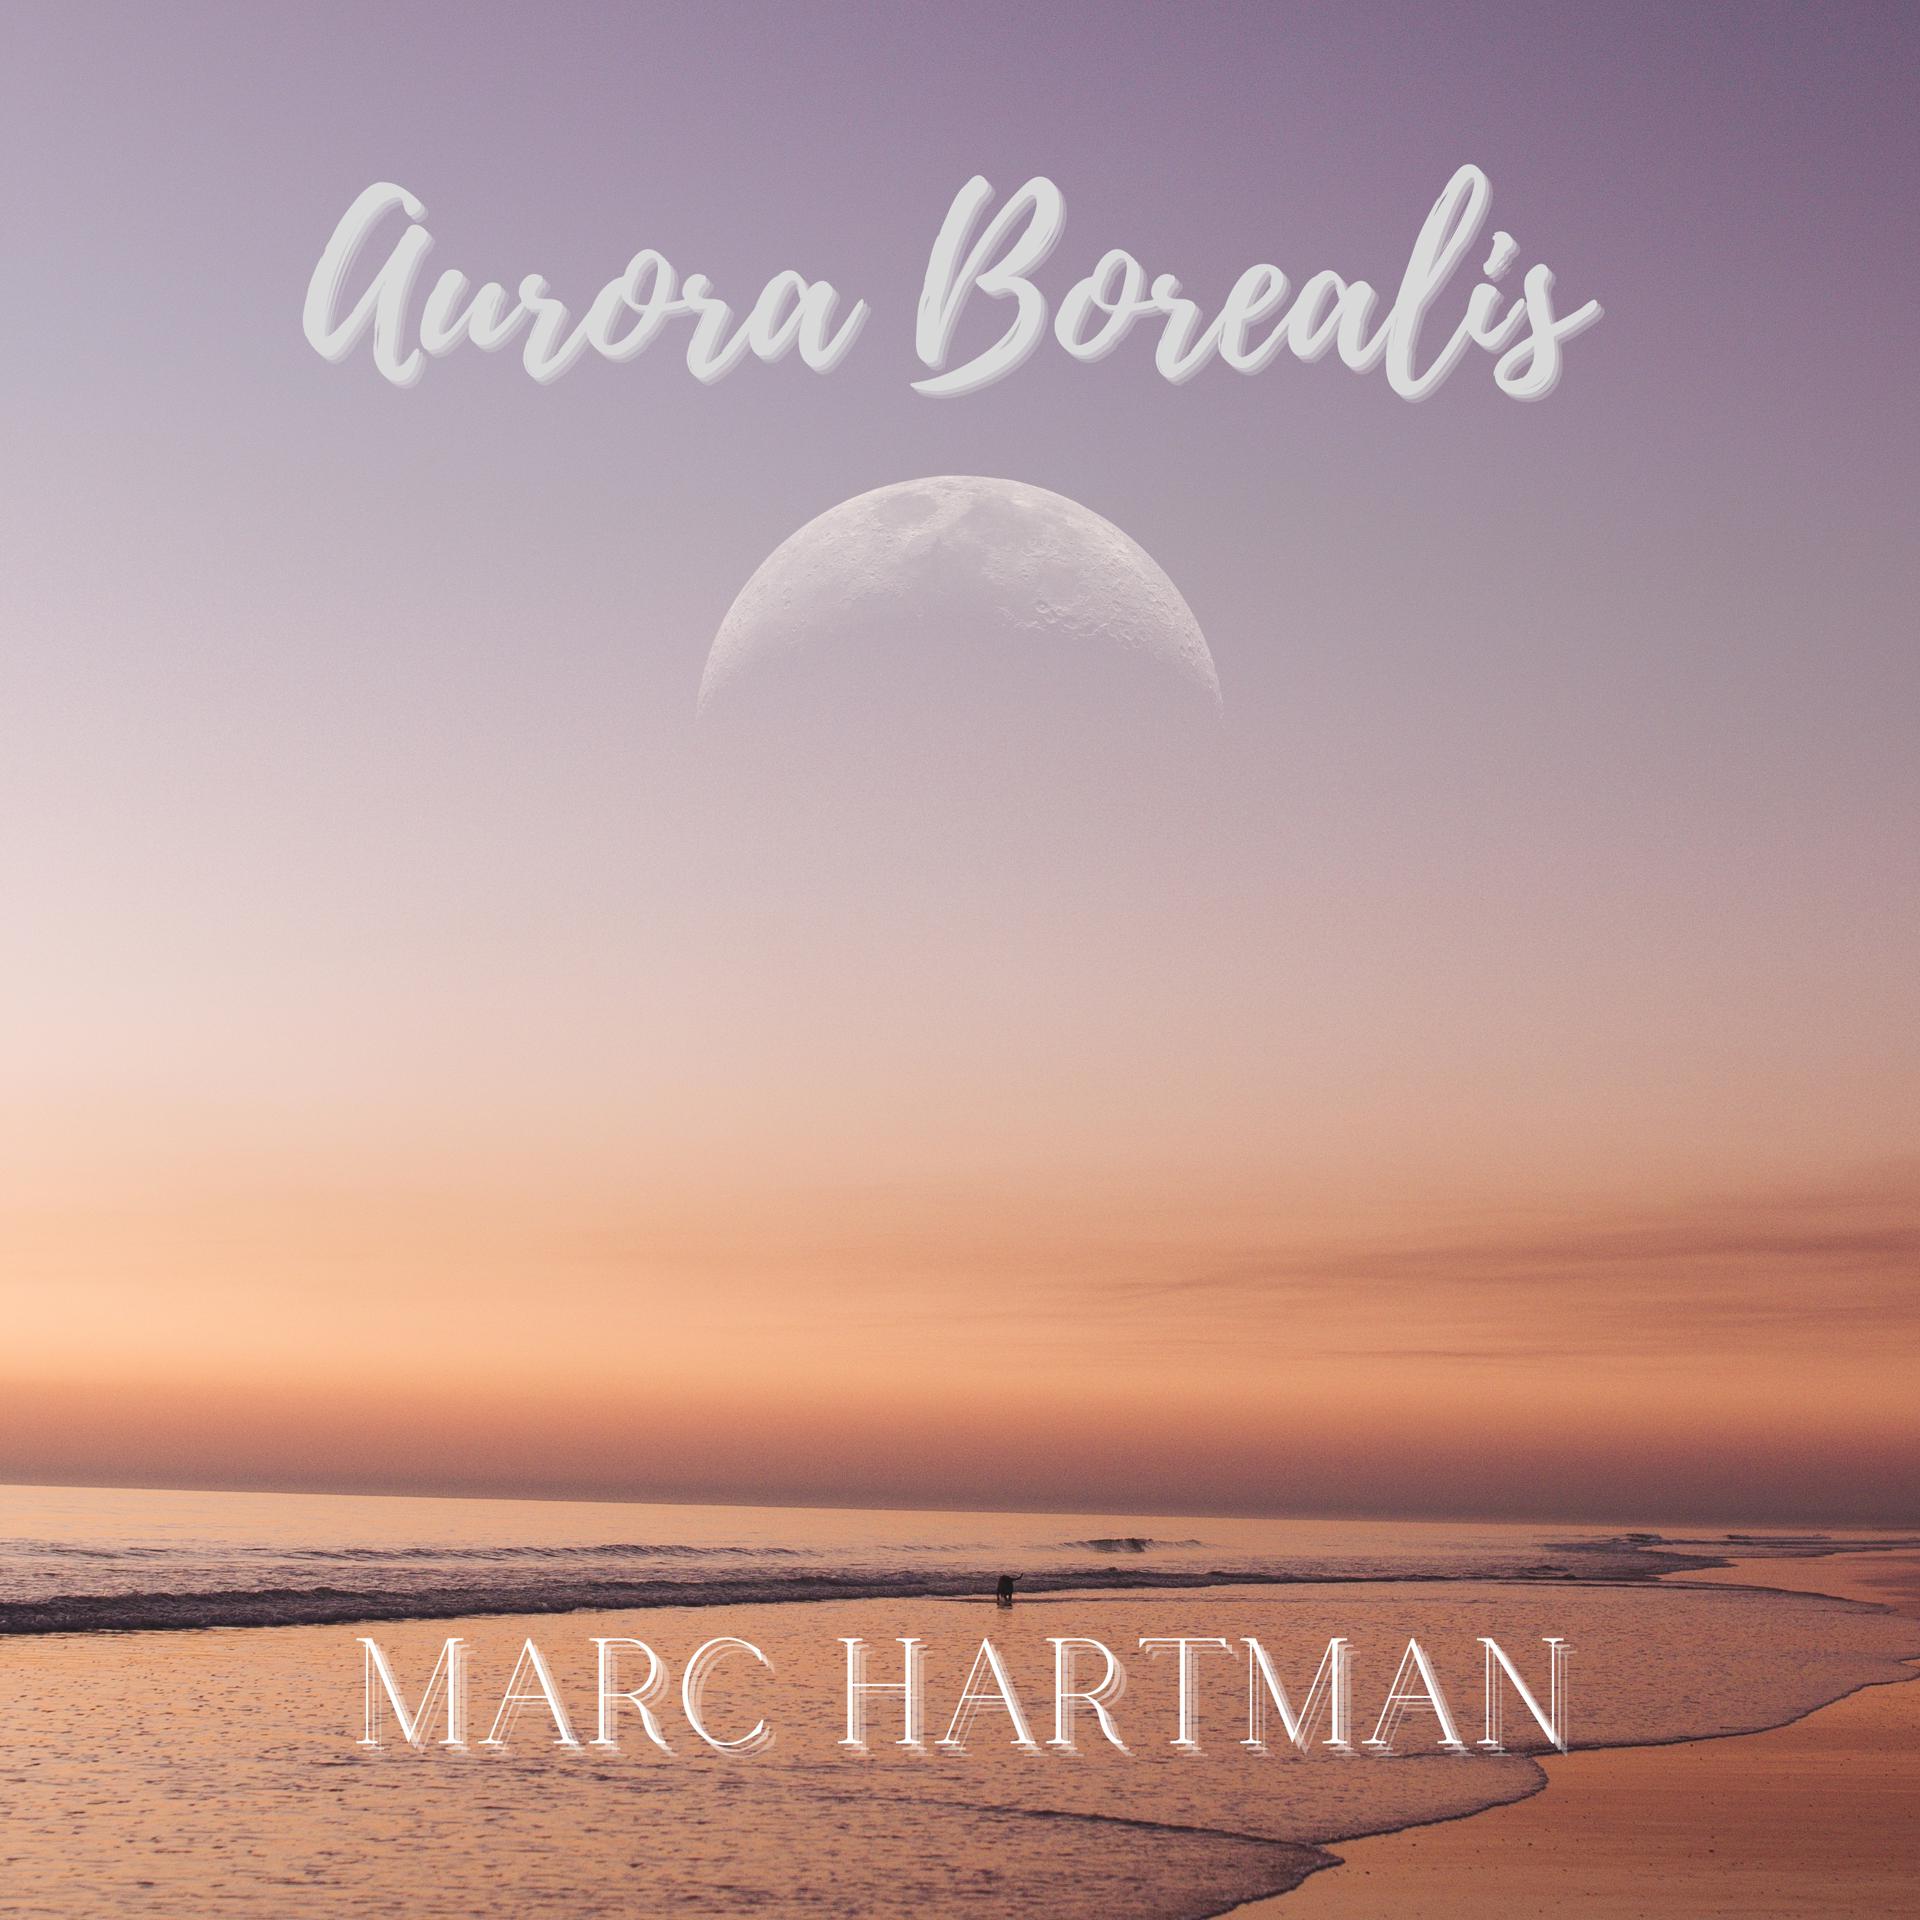 Постер альбома Aurora Borealis